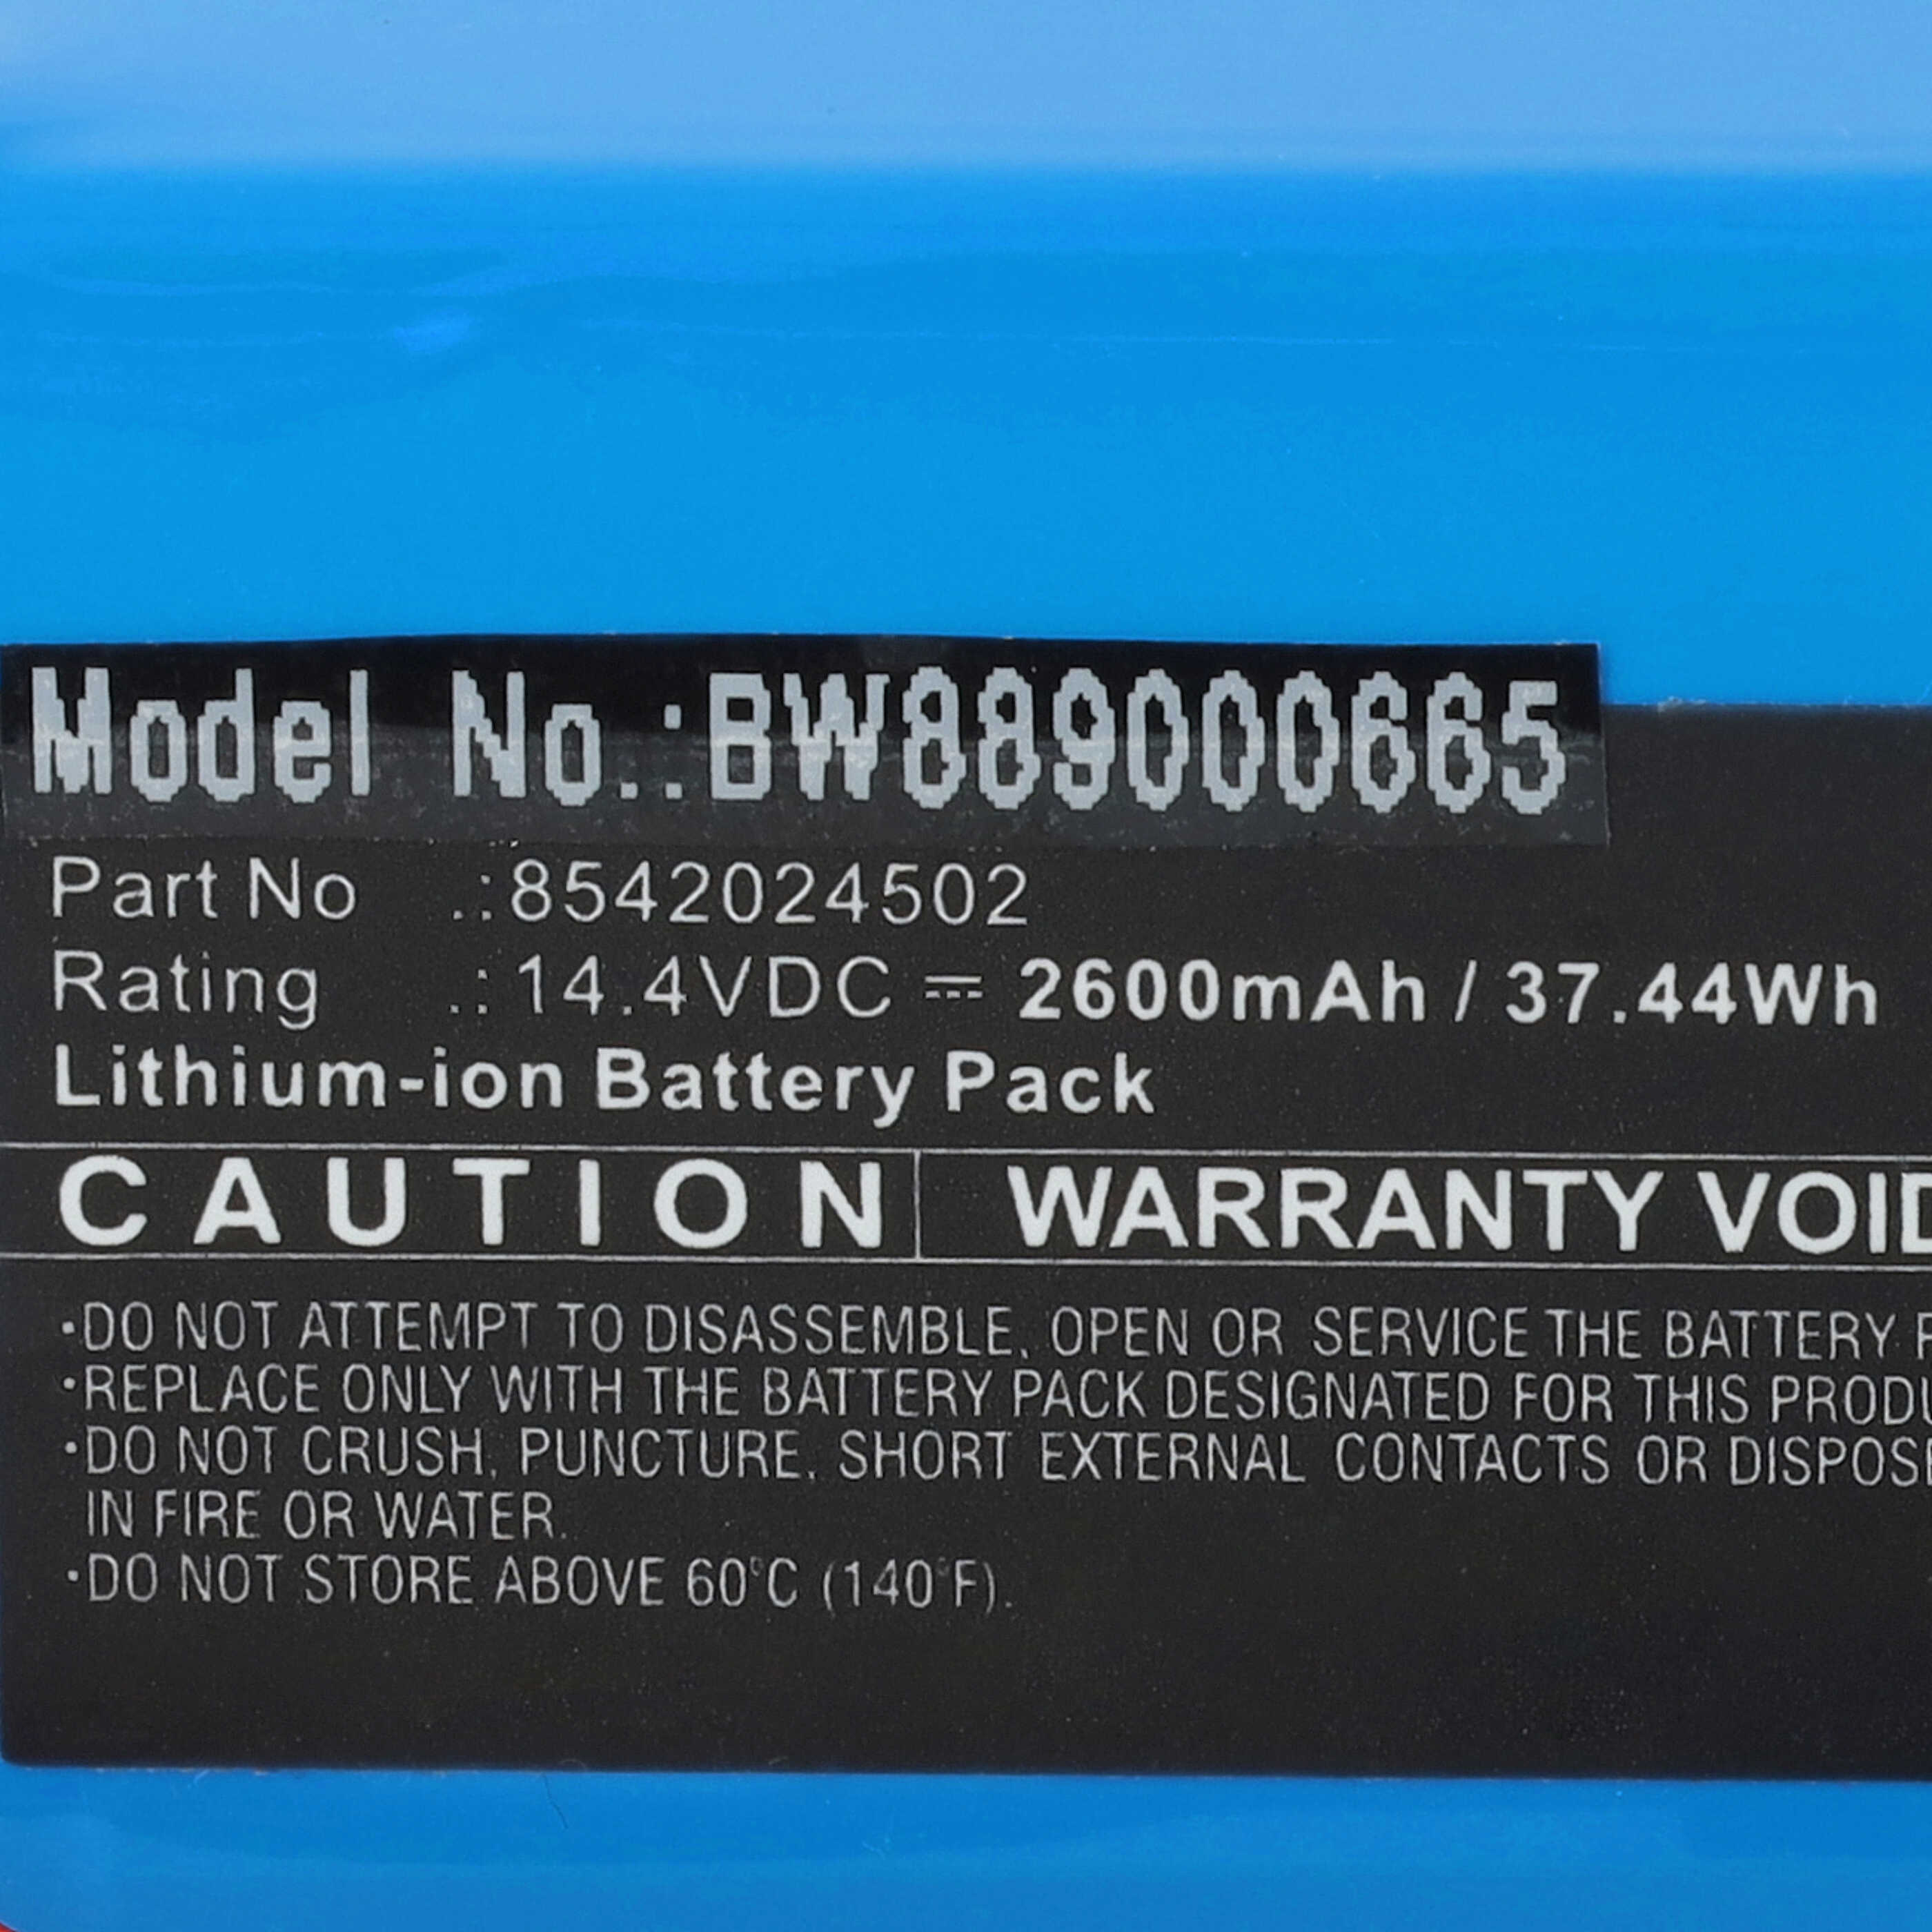 Batterie remplace Deik 8542024502 pour robot aspirateur - 2600mAh 14,4V Li-ion